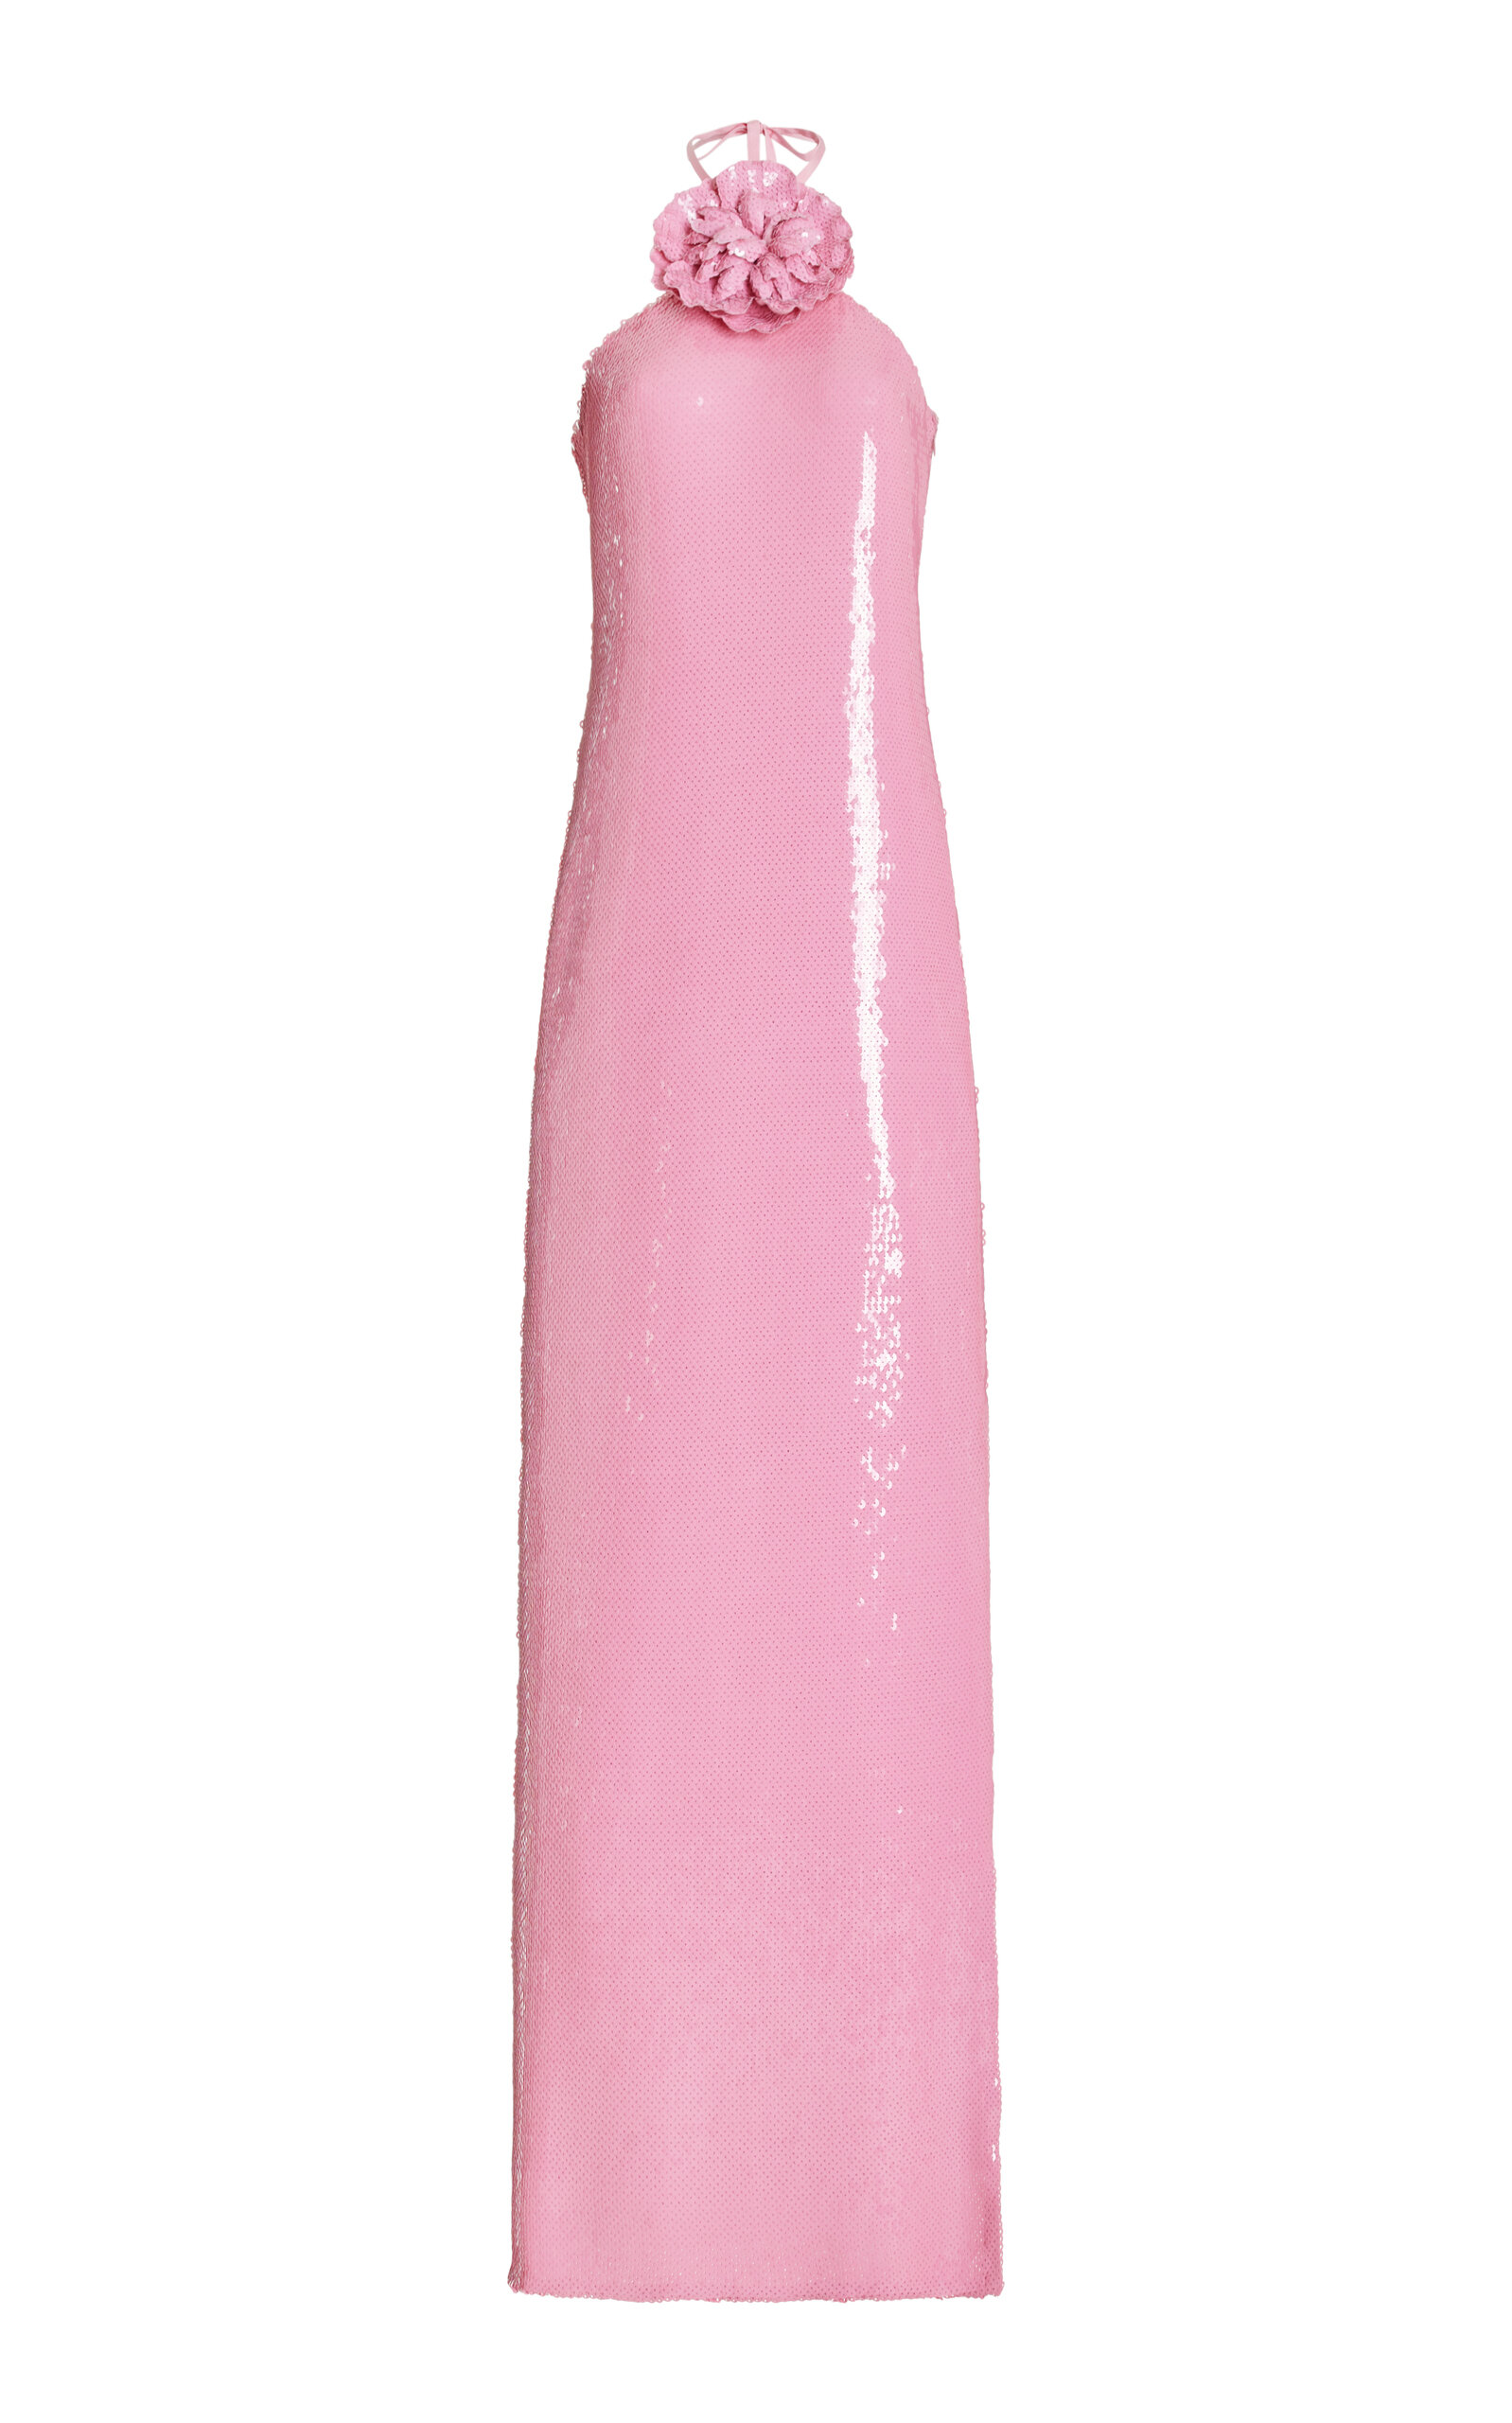 Rodarte Pink Sequin Halter Gown With Sequin Flower Detail